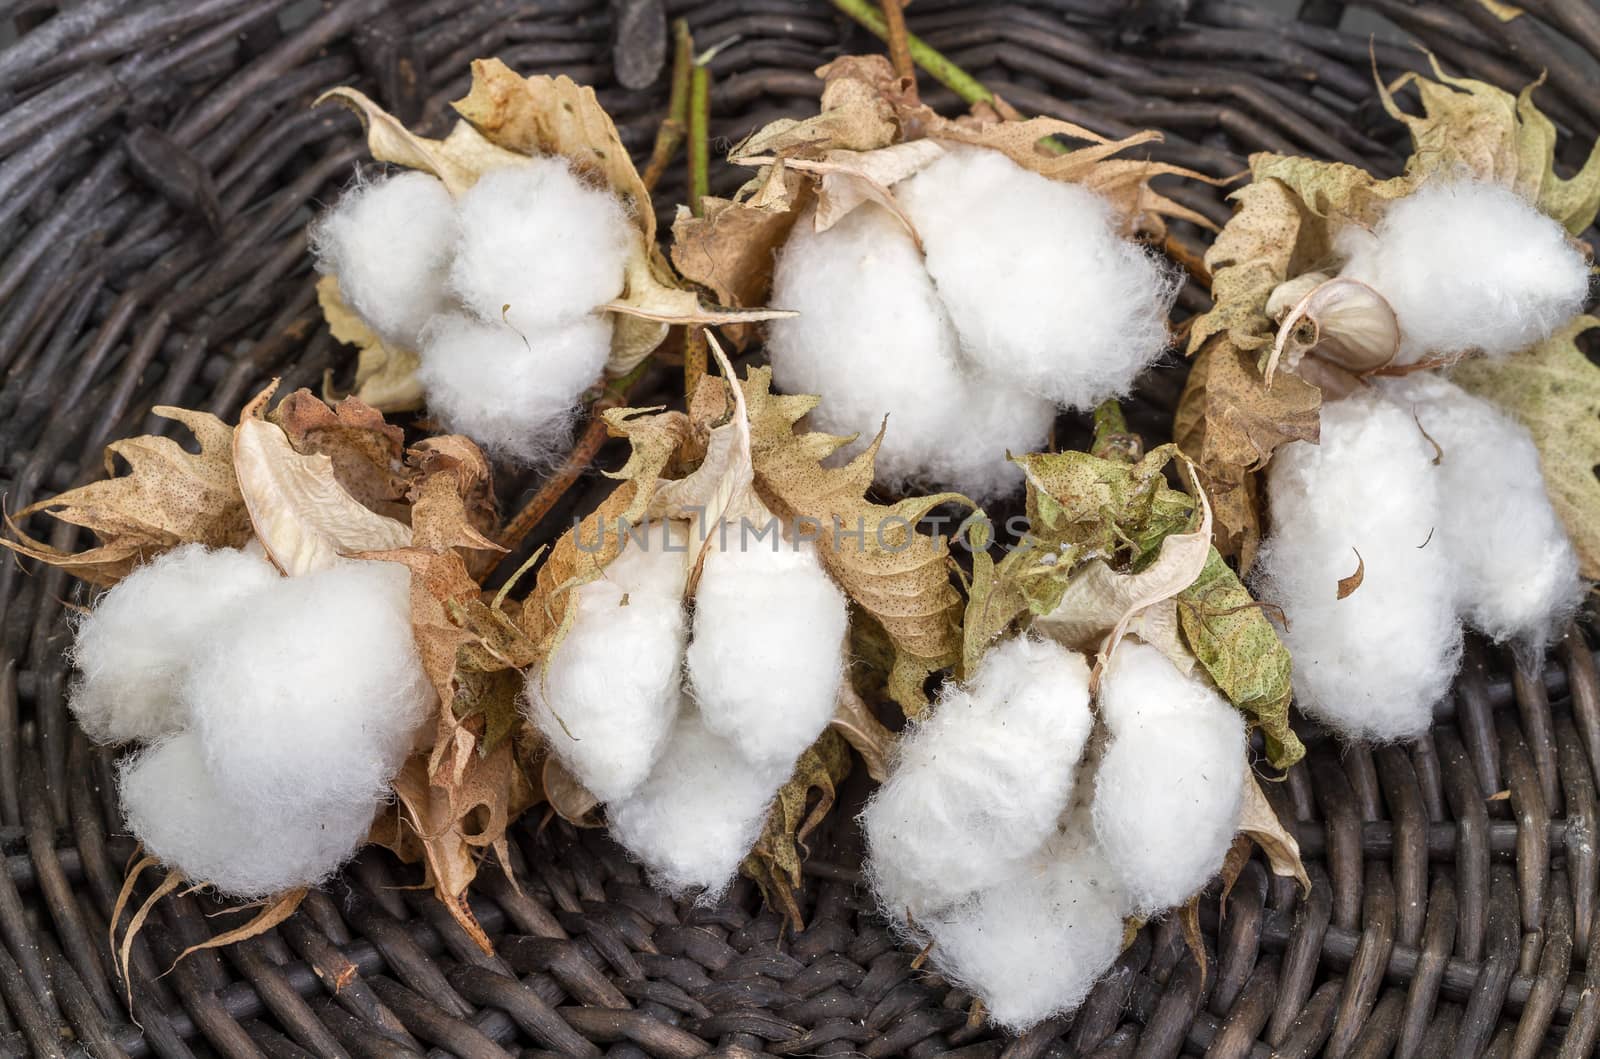 cotton - Gossypium hirsutum L. in Wicker basket